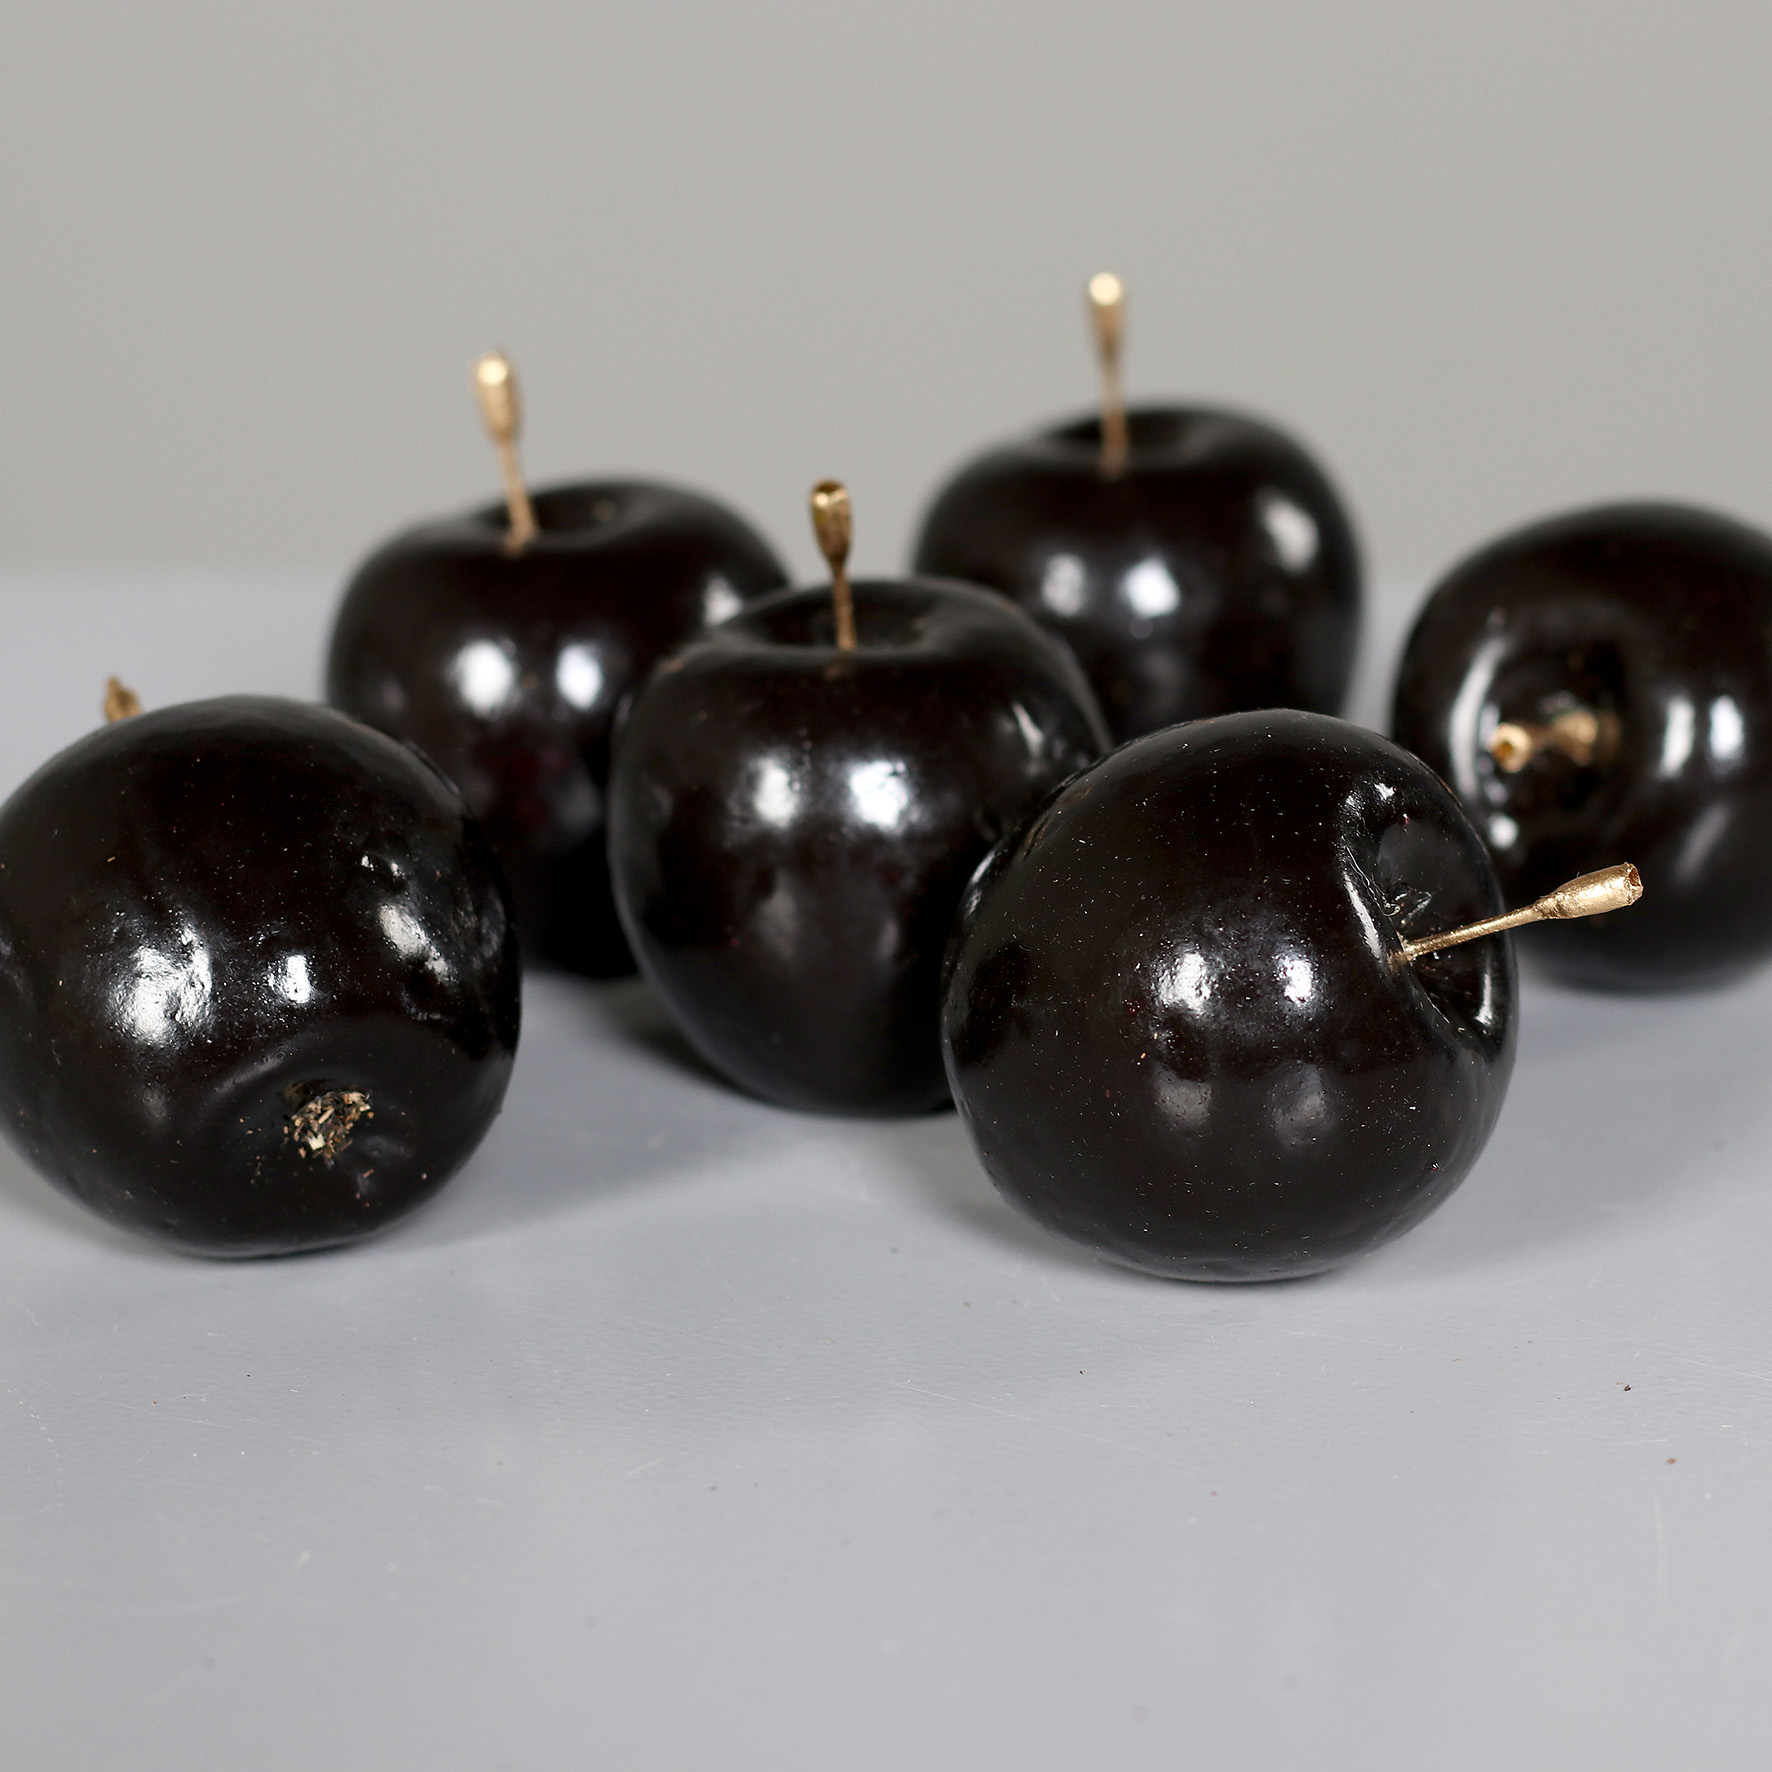 6 Stück Dekoapfel / Apfel 5cm schwarz DP künstliches Obst Dekoobst